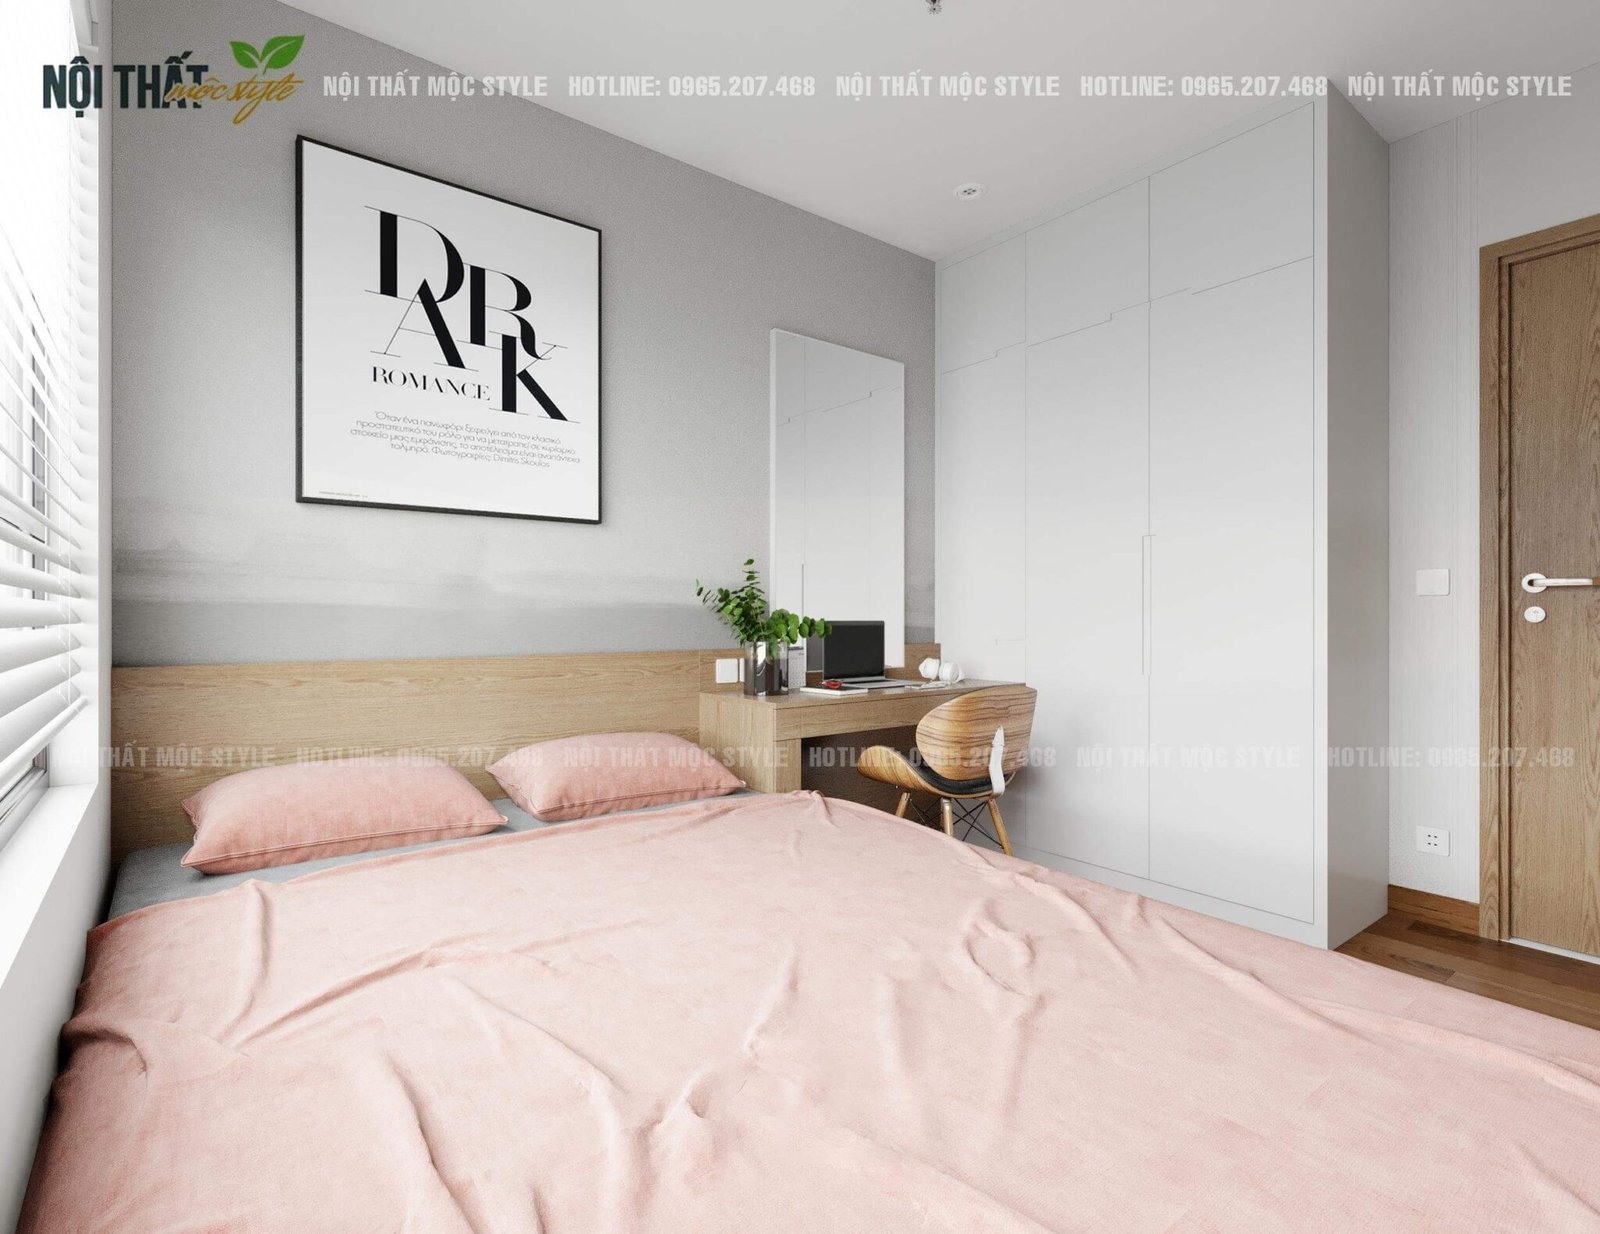 Thiết kế phòng ngủ: Tìm kiếm những ý tưởng thiết kế phòng ngủ độc đáo và tinh tế. Khám phá những mẫu thiết kế phòng ngủ đẹp, sang trọng và tiện nghi để tạo không gian nghỉ ngơi hoàn hảo.